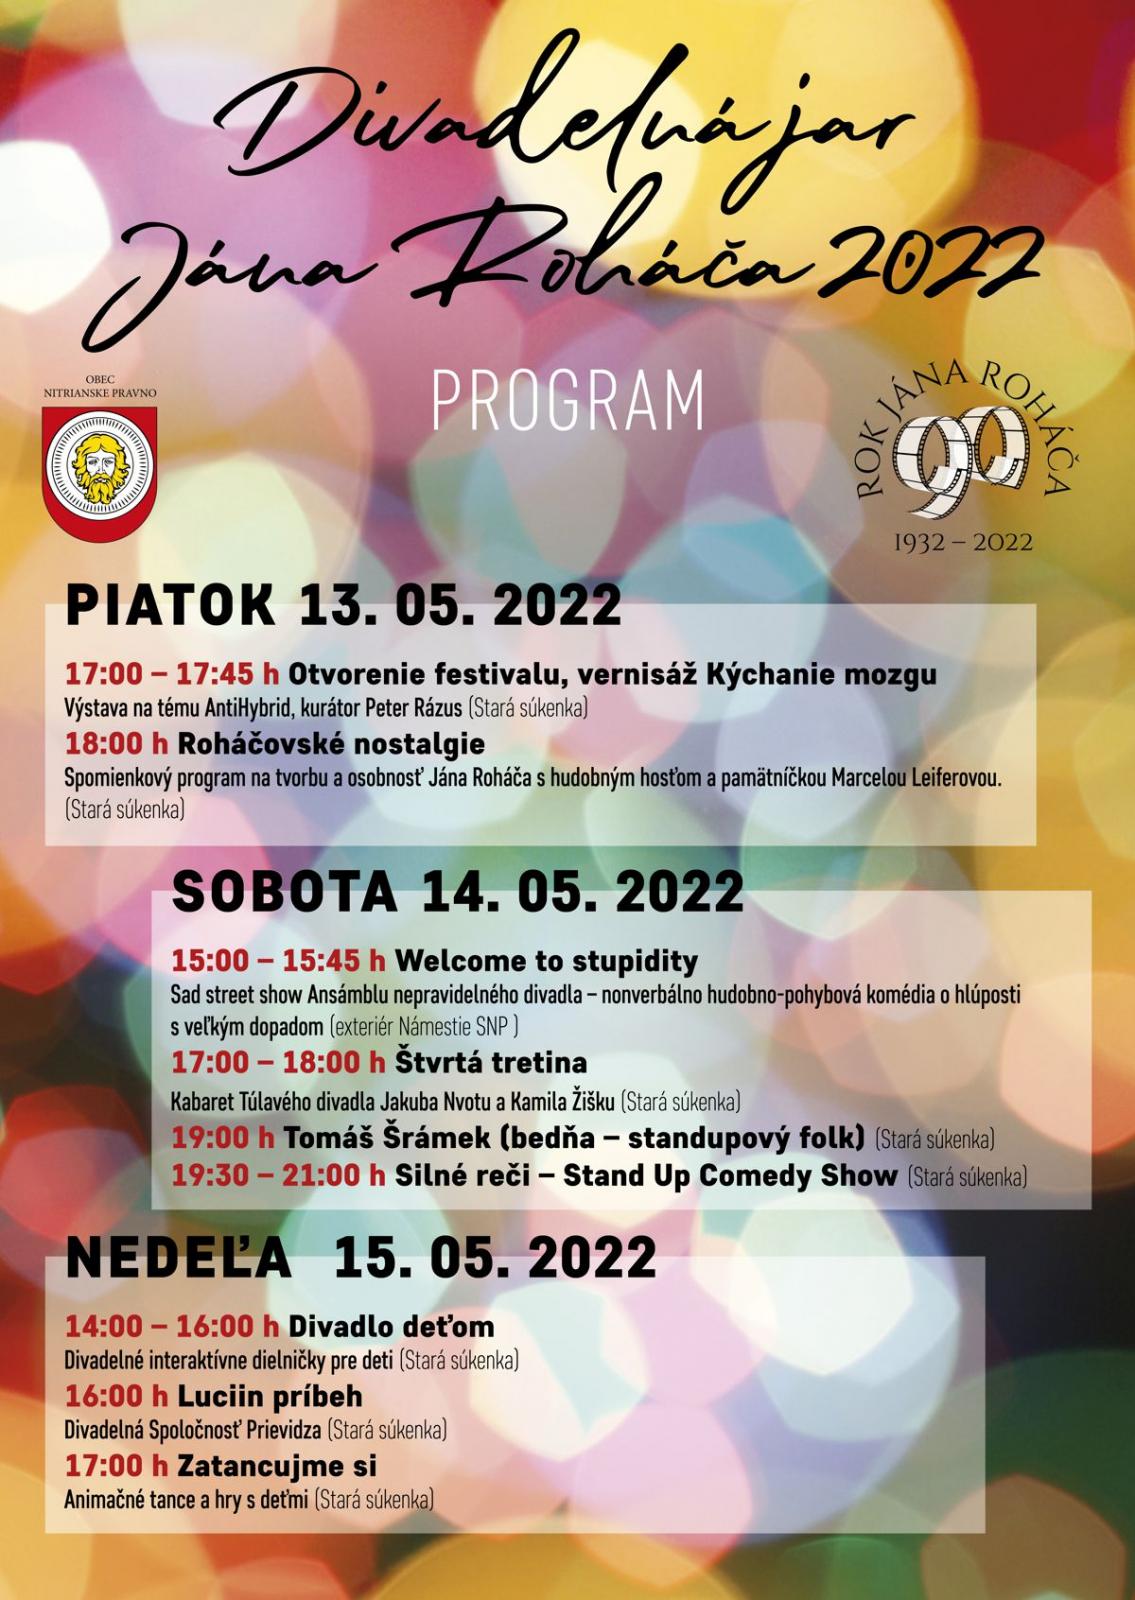 Divadelná jar Jána Roháča 2022 - festival